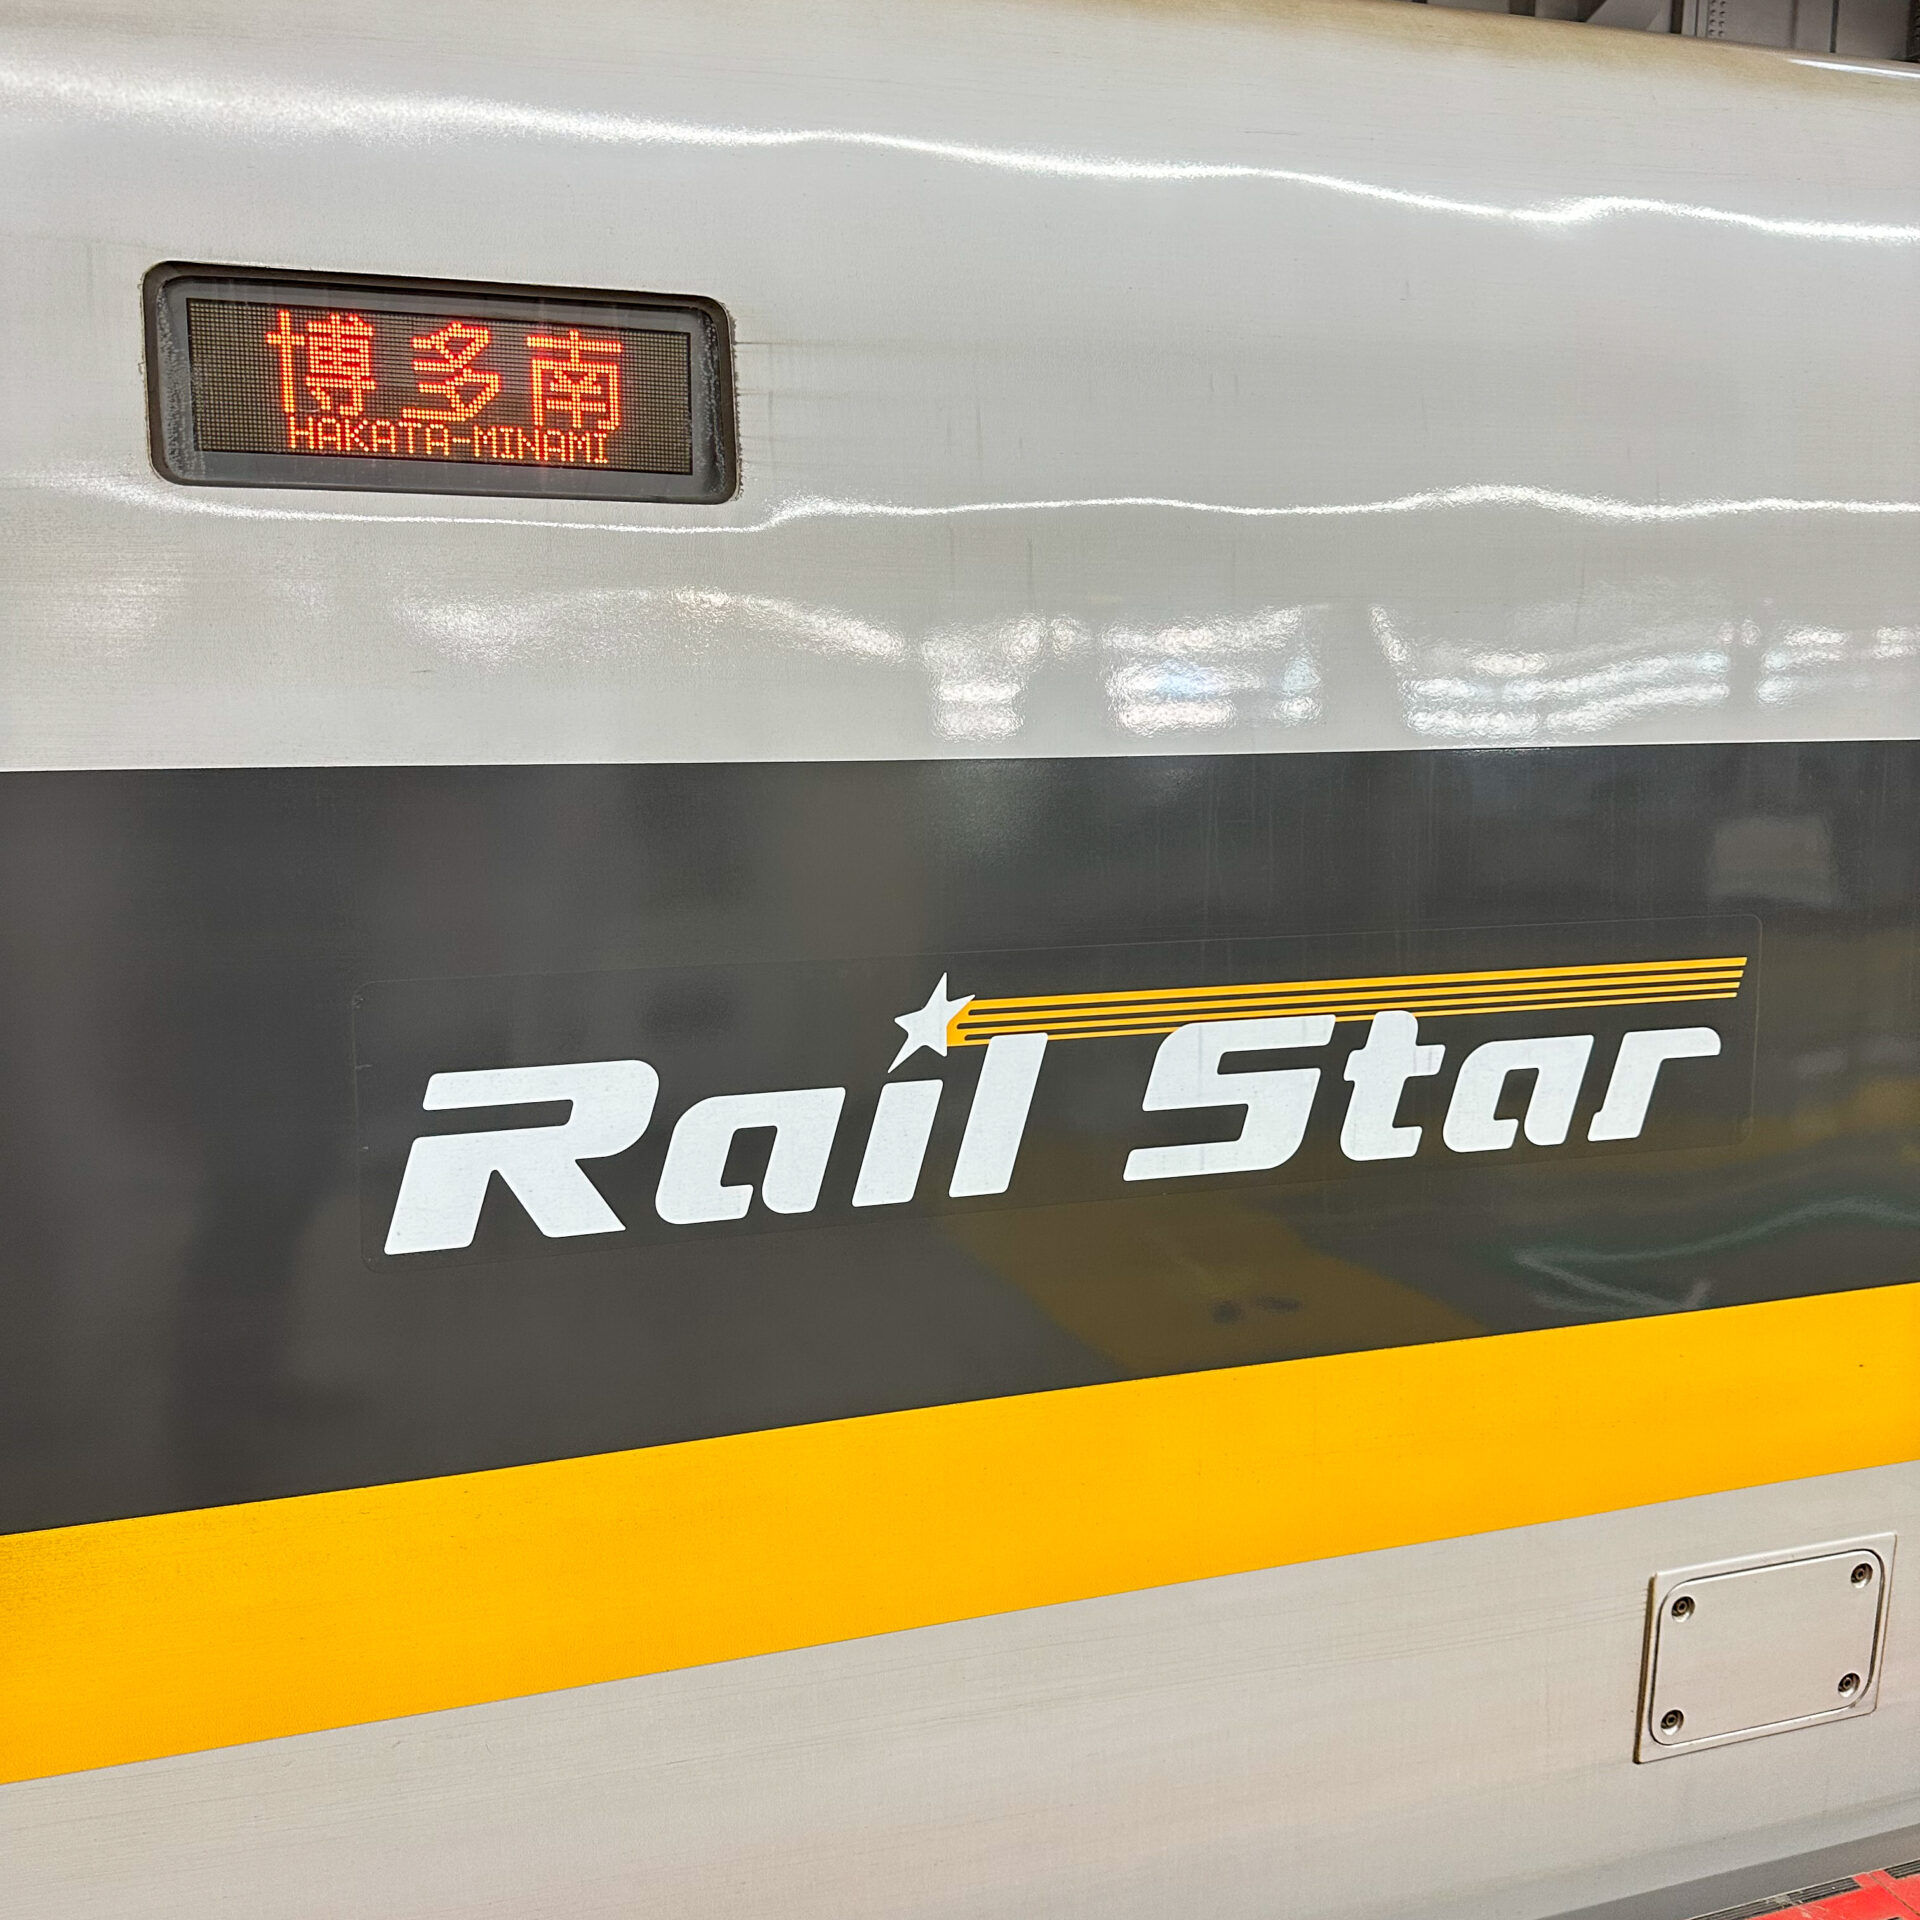 山陽新幹線700系ひかりレールスター